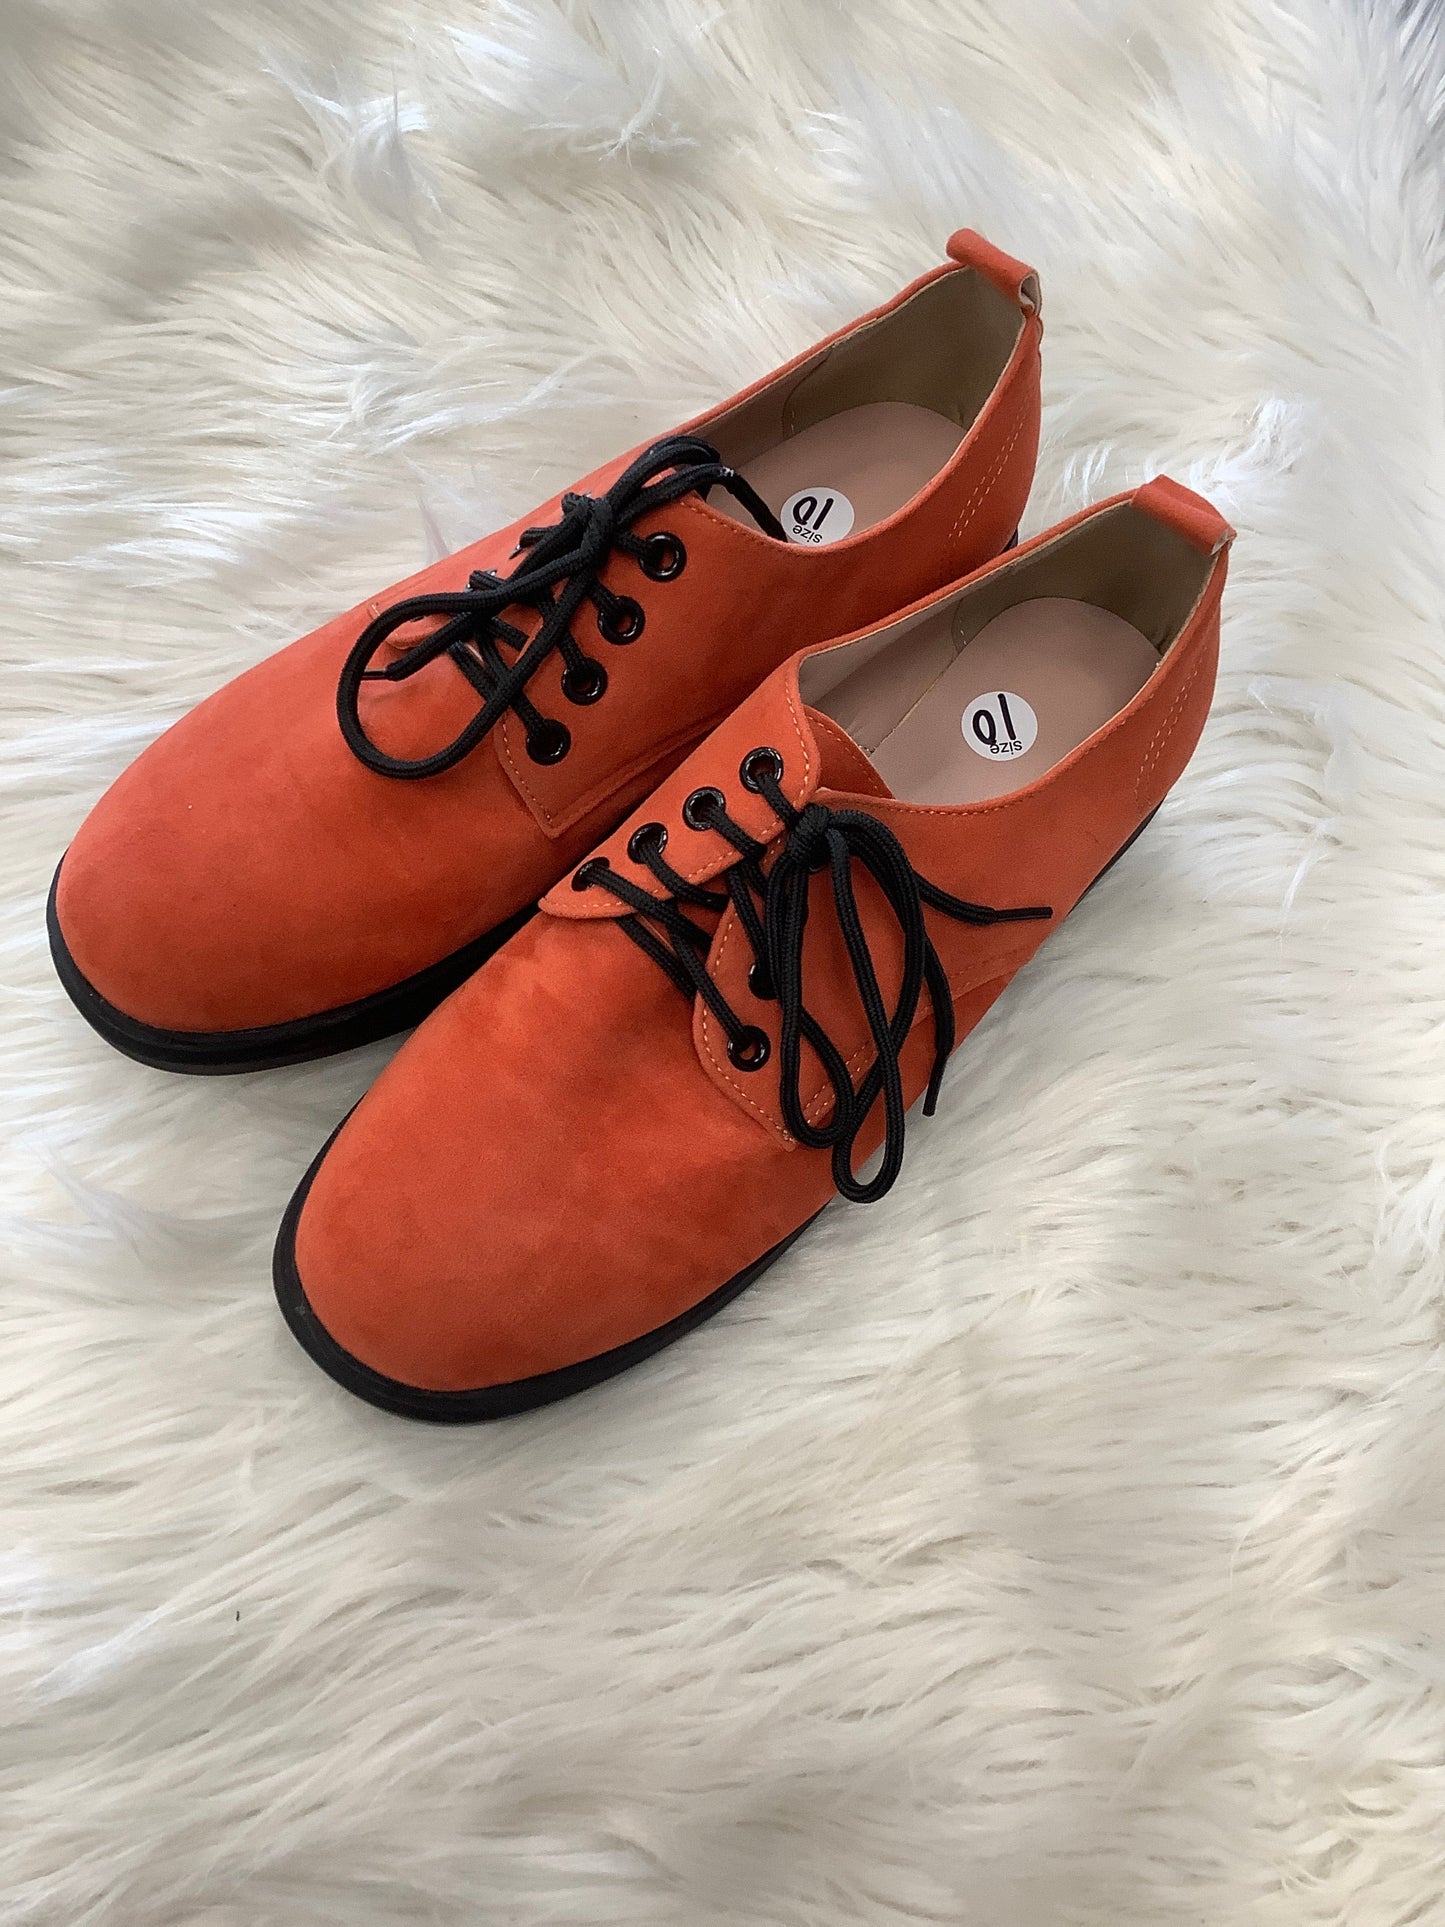 Orange Shoes Flats Clothes Mentor, Size 10